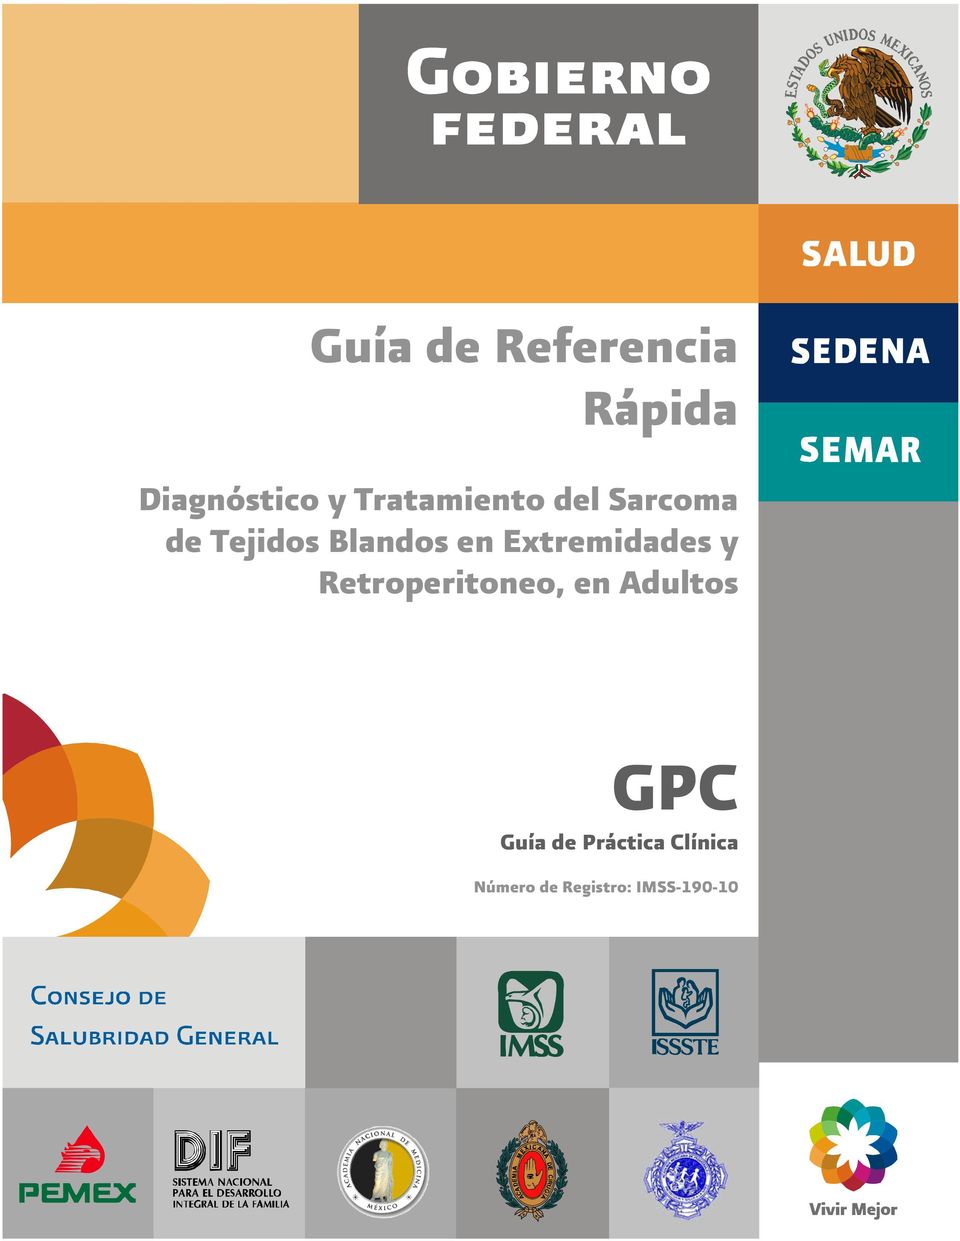 Extremidades y Retroperitoneo, en Adultos GPC